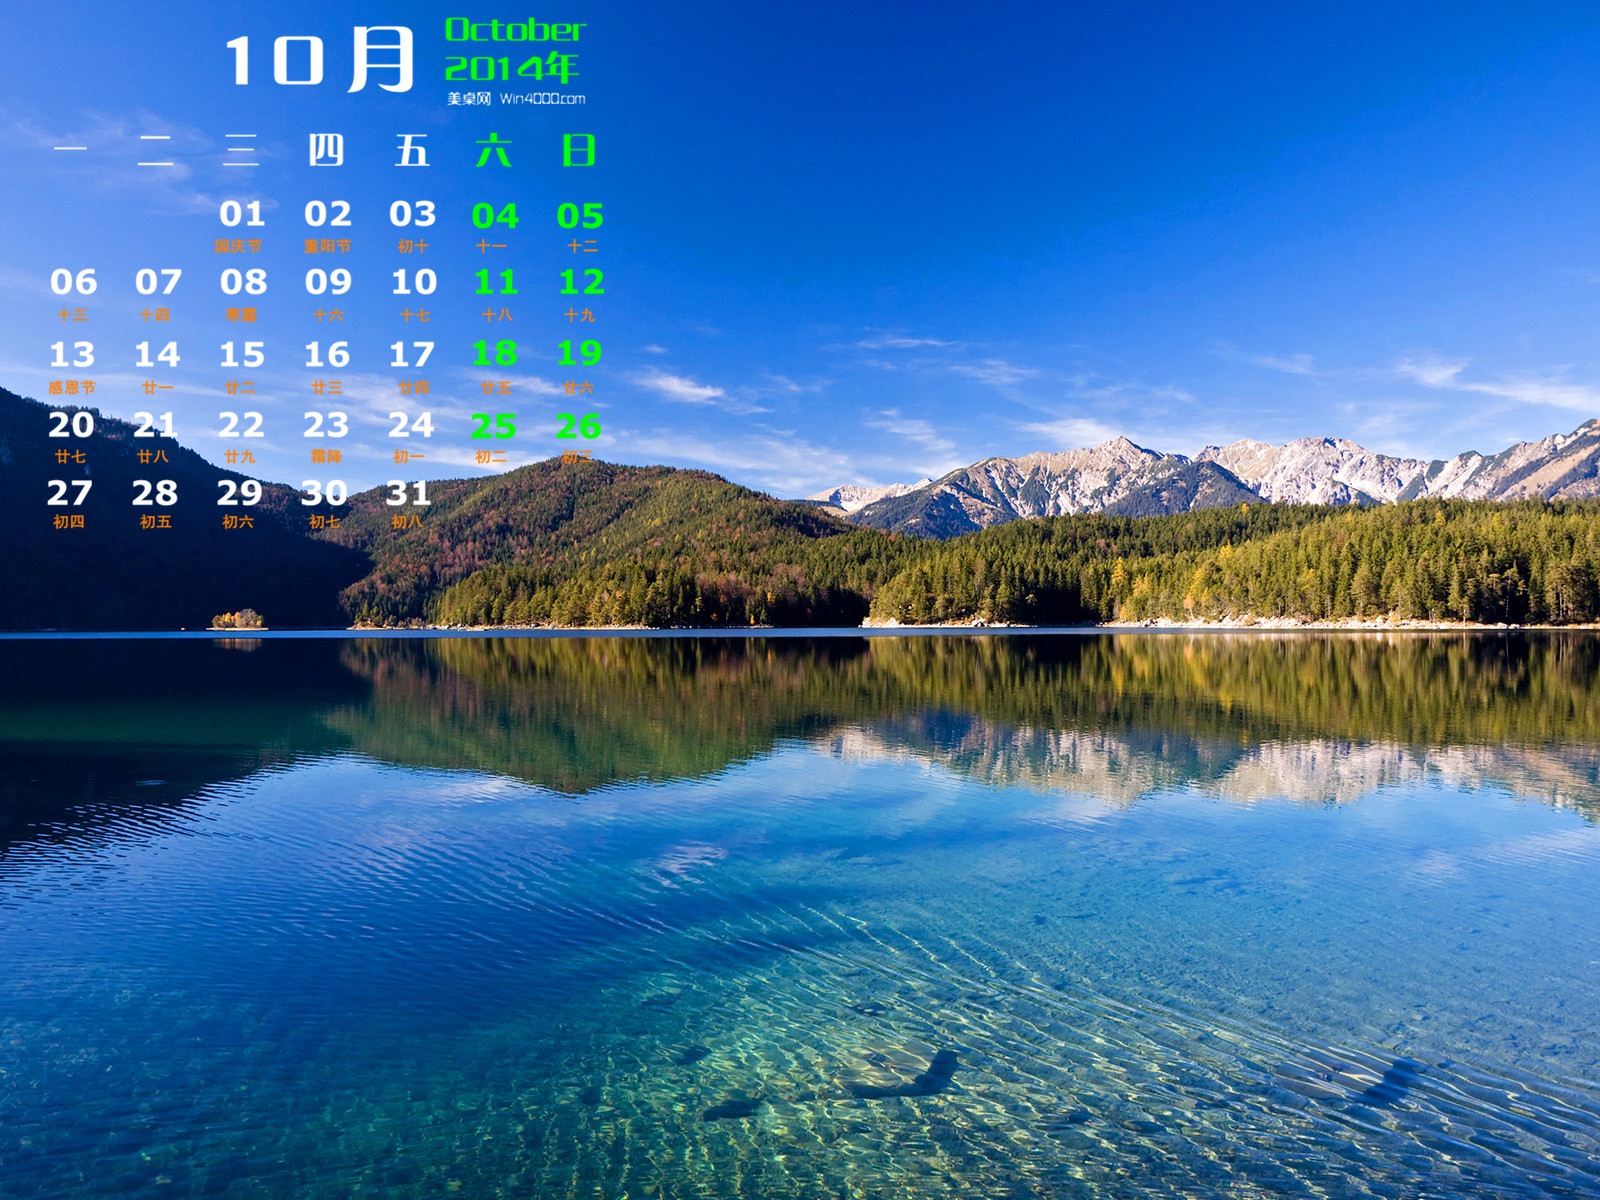 10 2014 wallpaper Calendario (1) #6 - 1600x1200